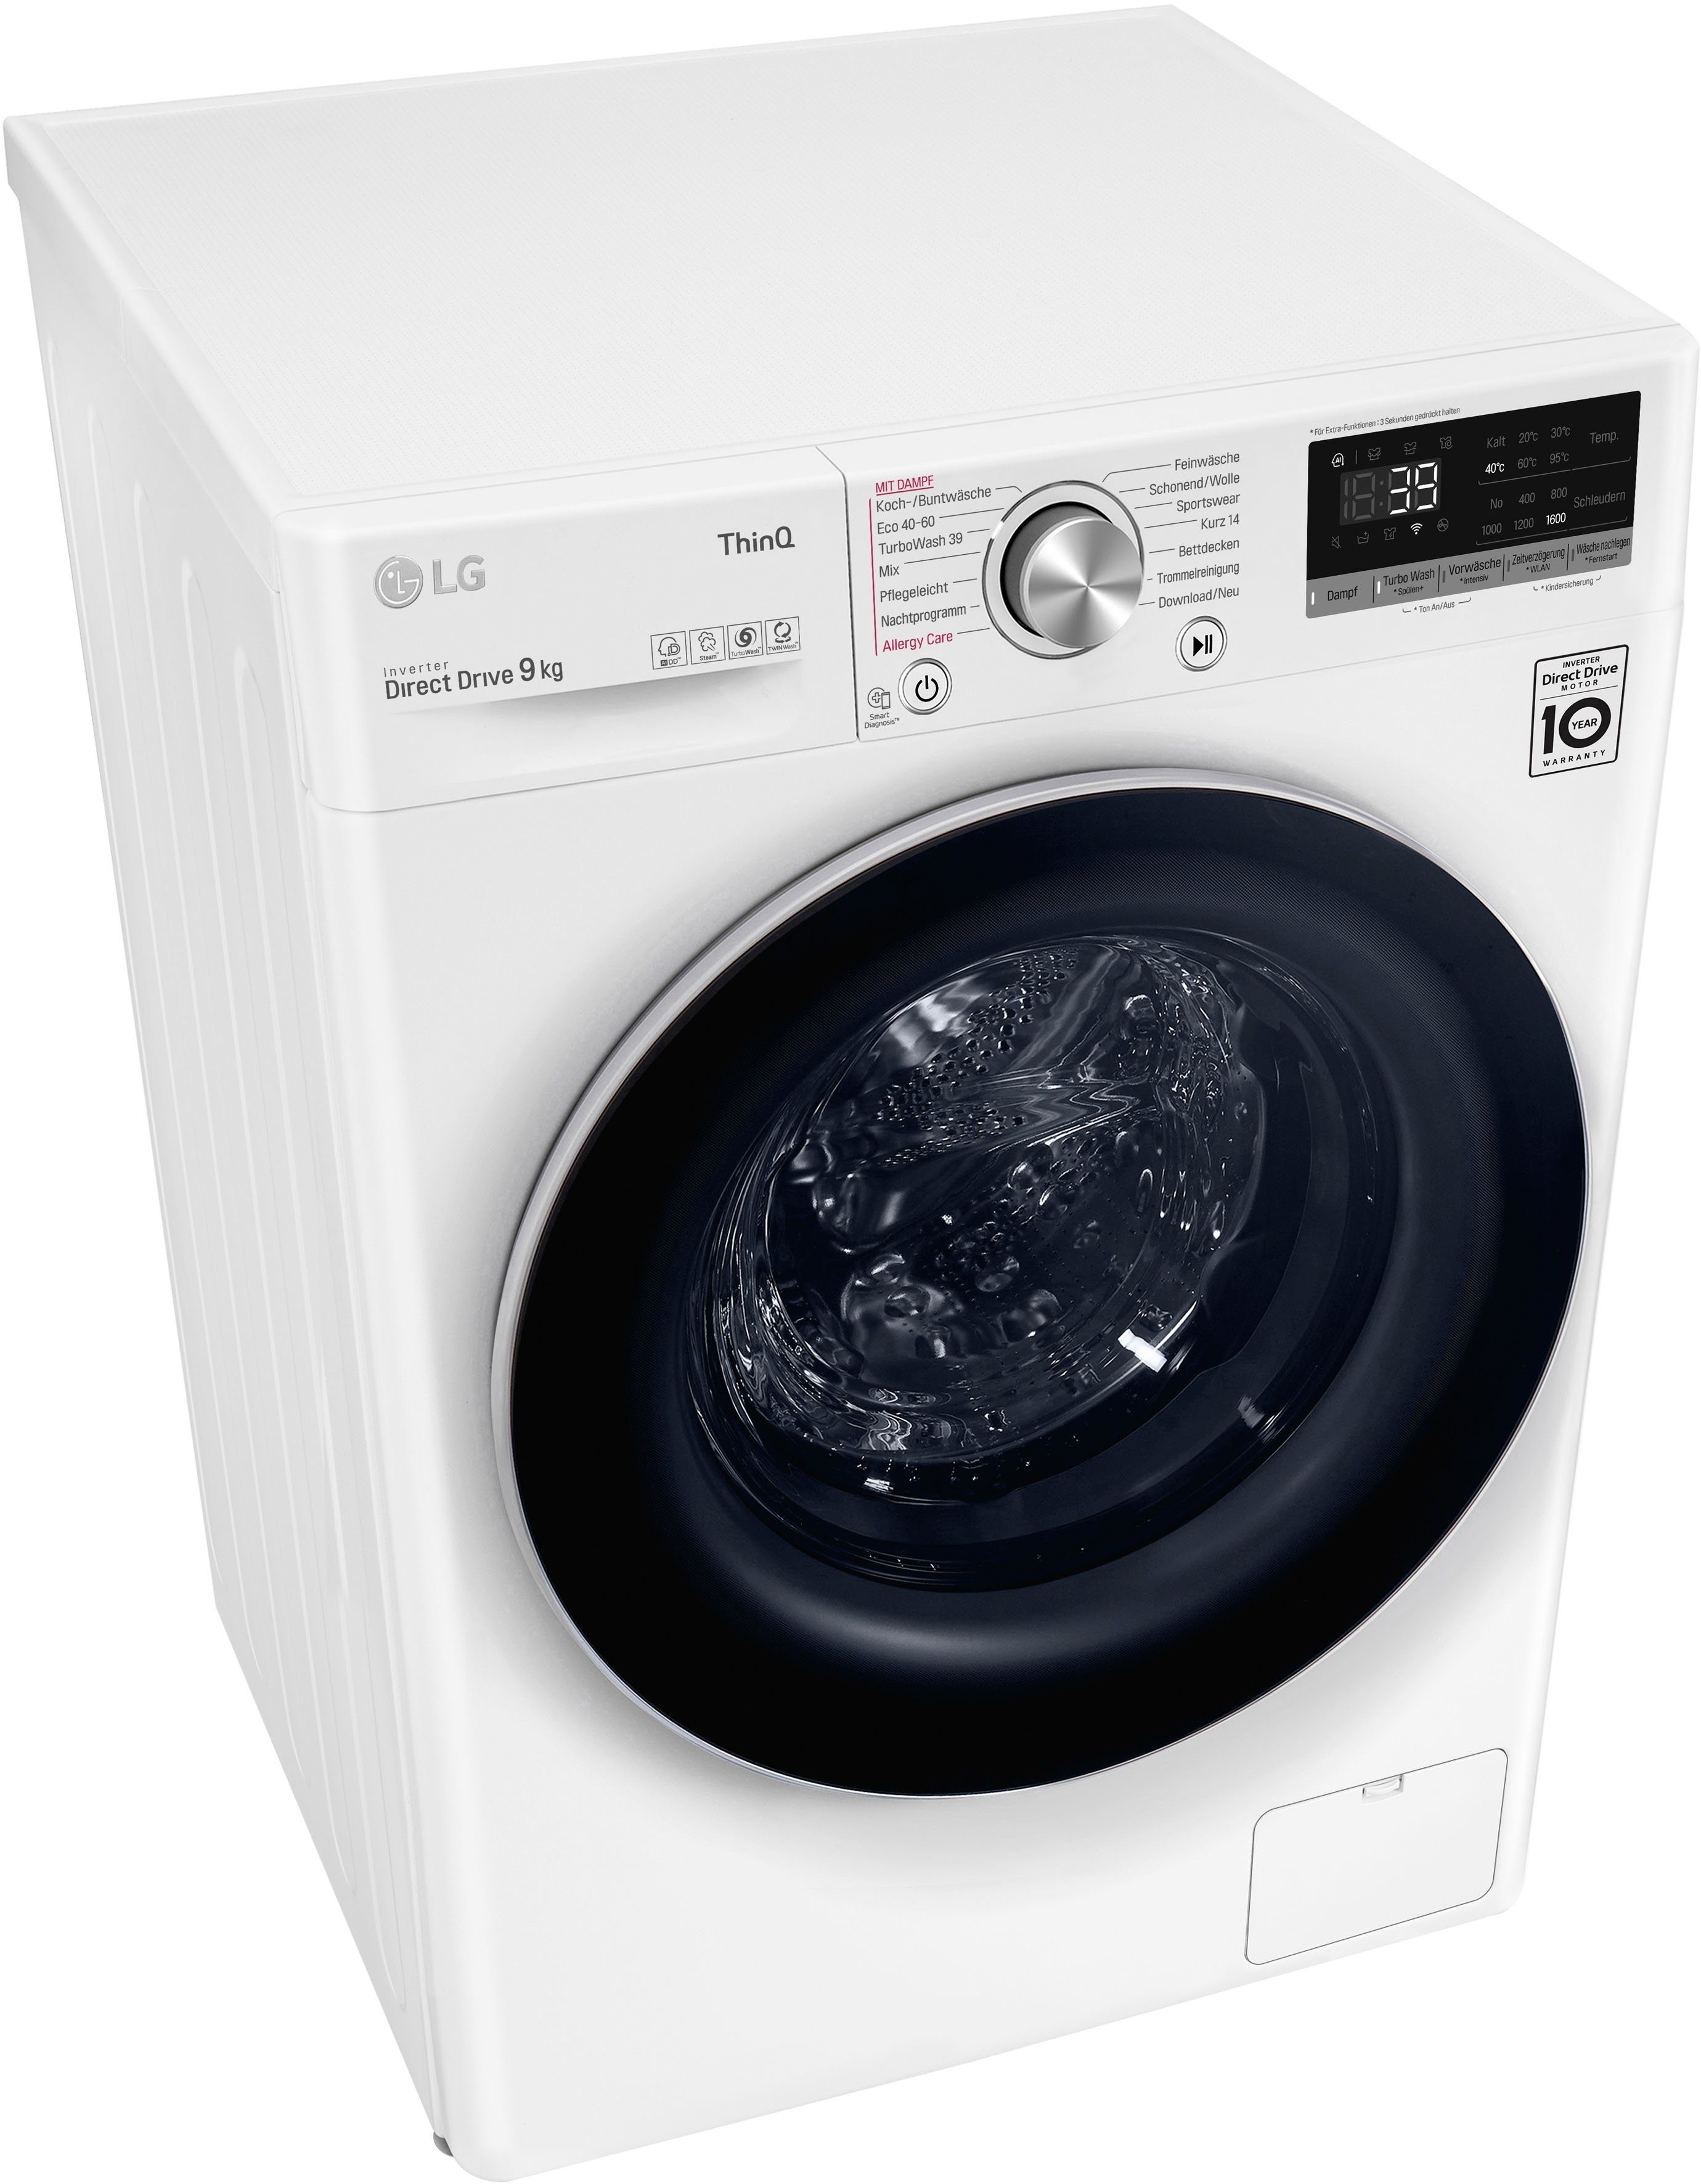 1600 Waschmaschine TurboWash® LG 39 F6WV709P1, kg, in Minuten nur Waschen U/min, 9 -